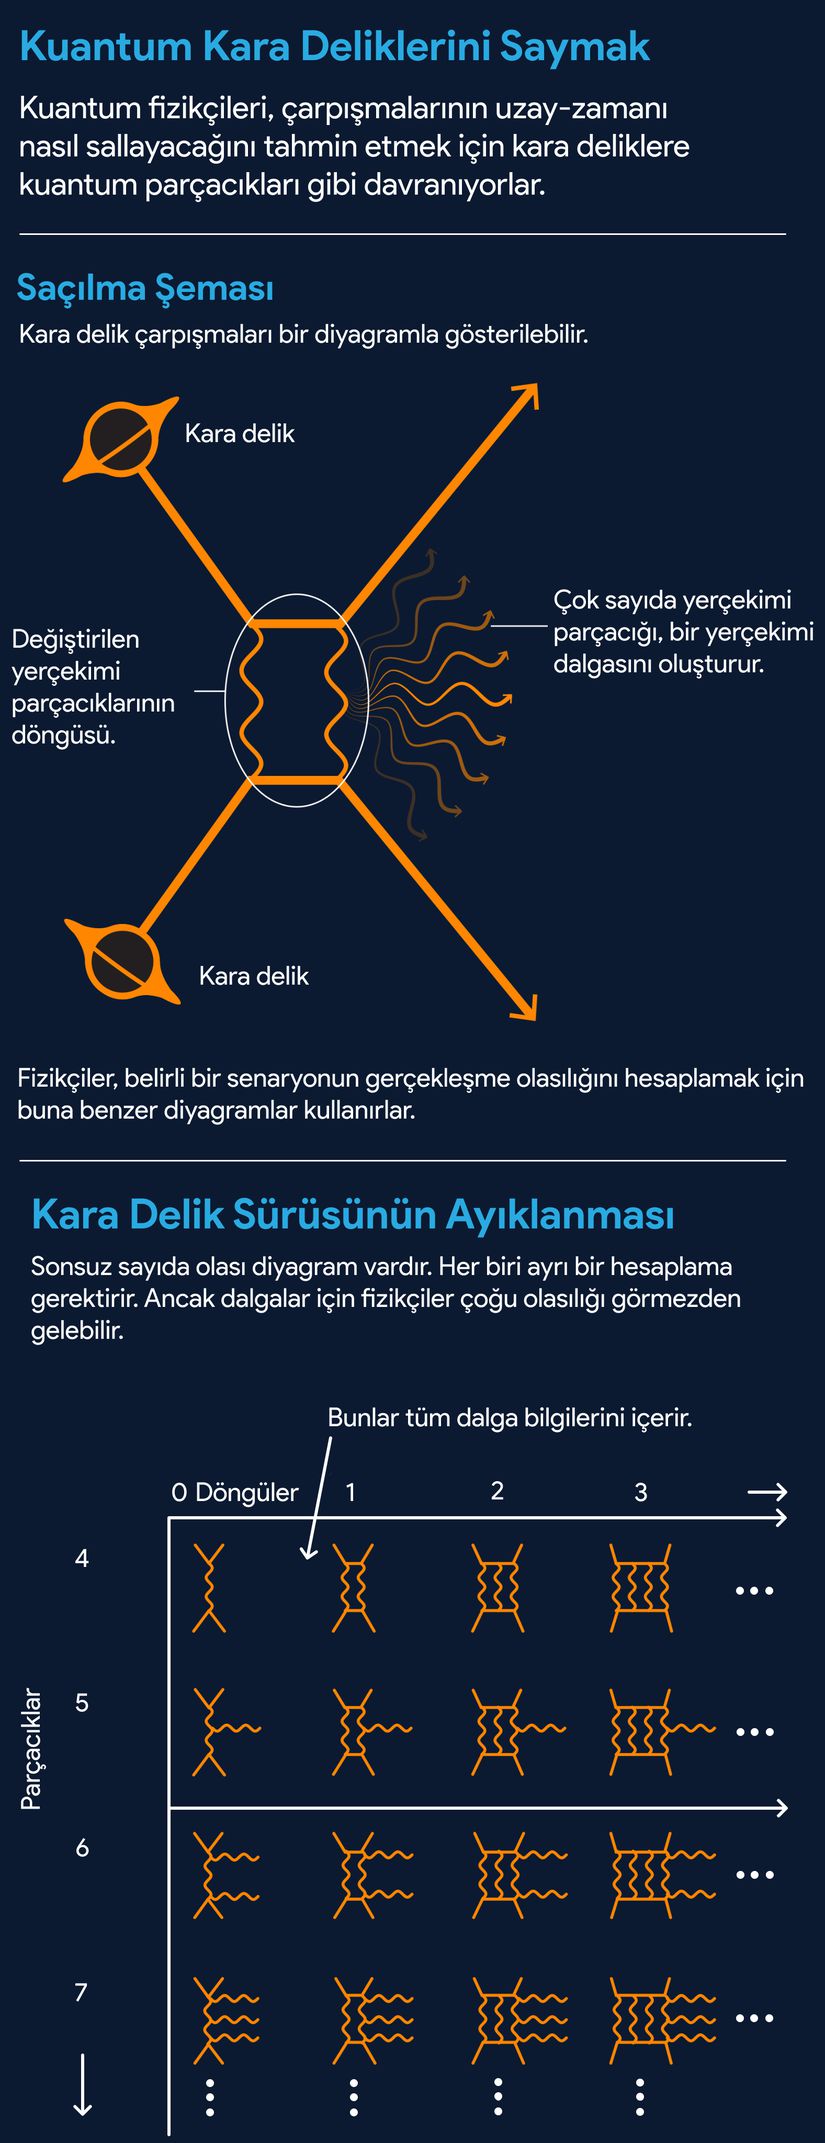 Kuantum kara deliklerinin nasıl sayıldığının infografisi. Çeviri: Ali Ahmet Turunç